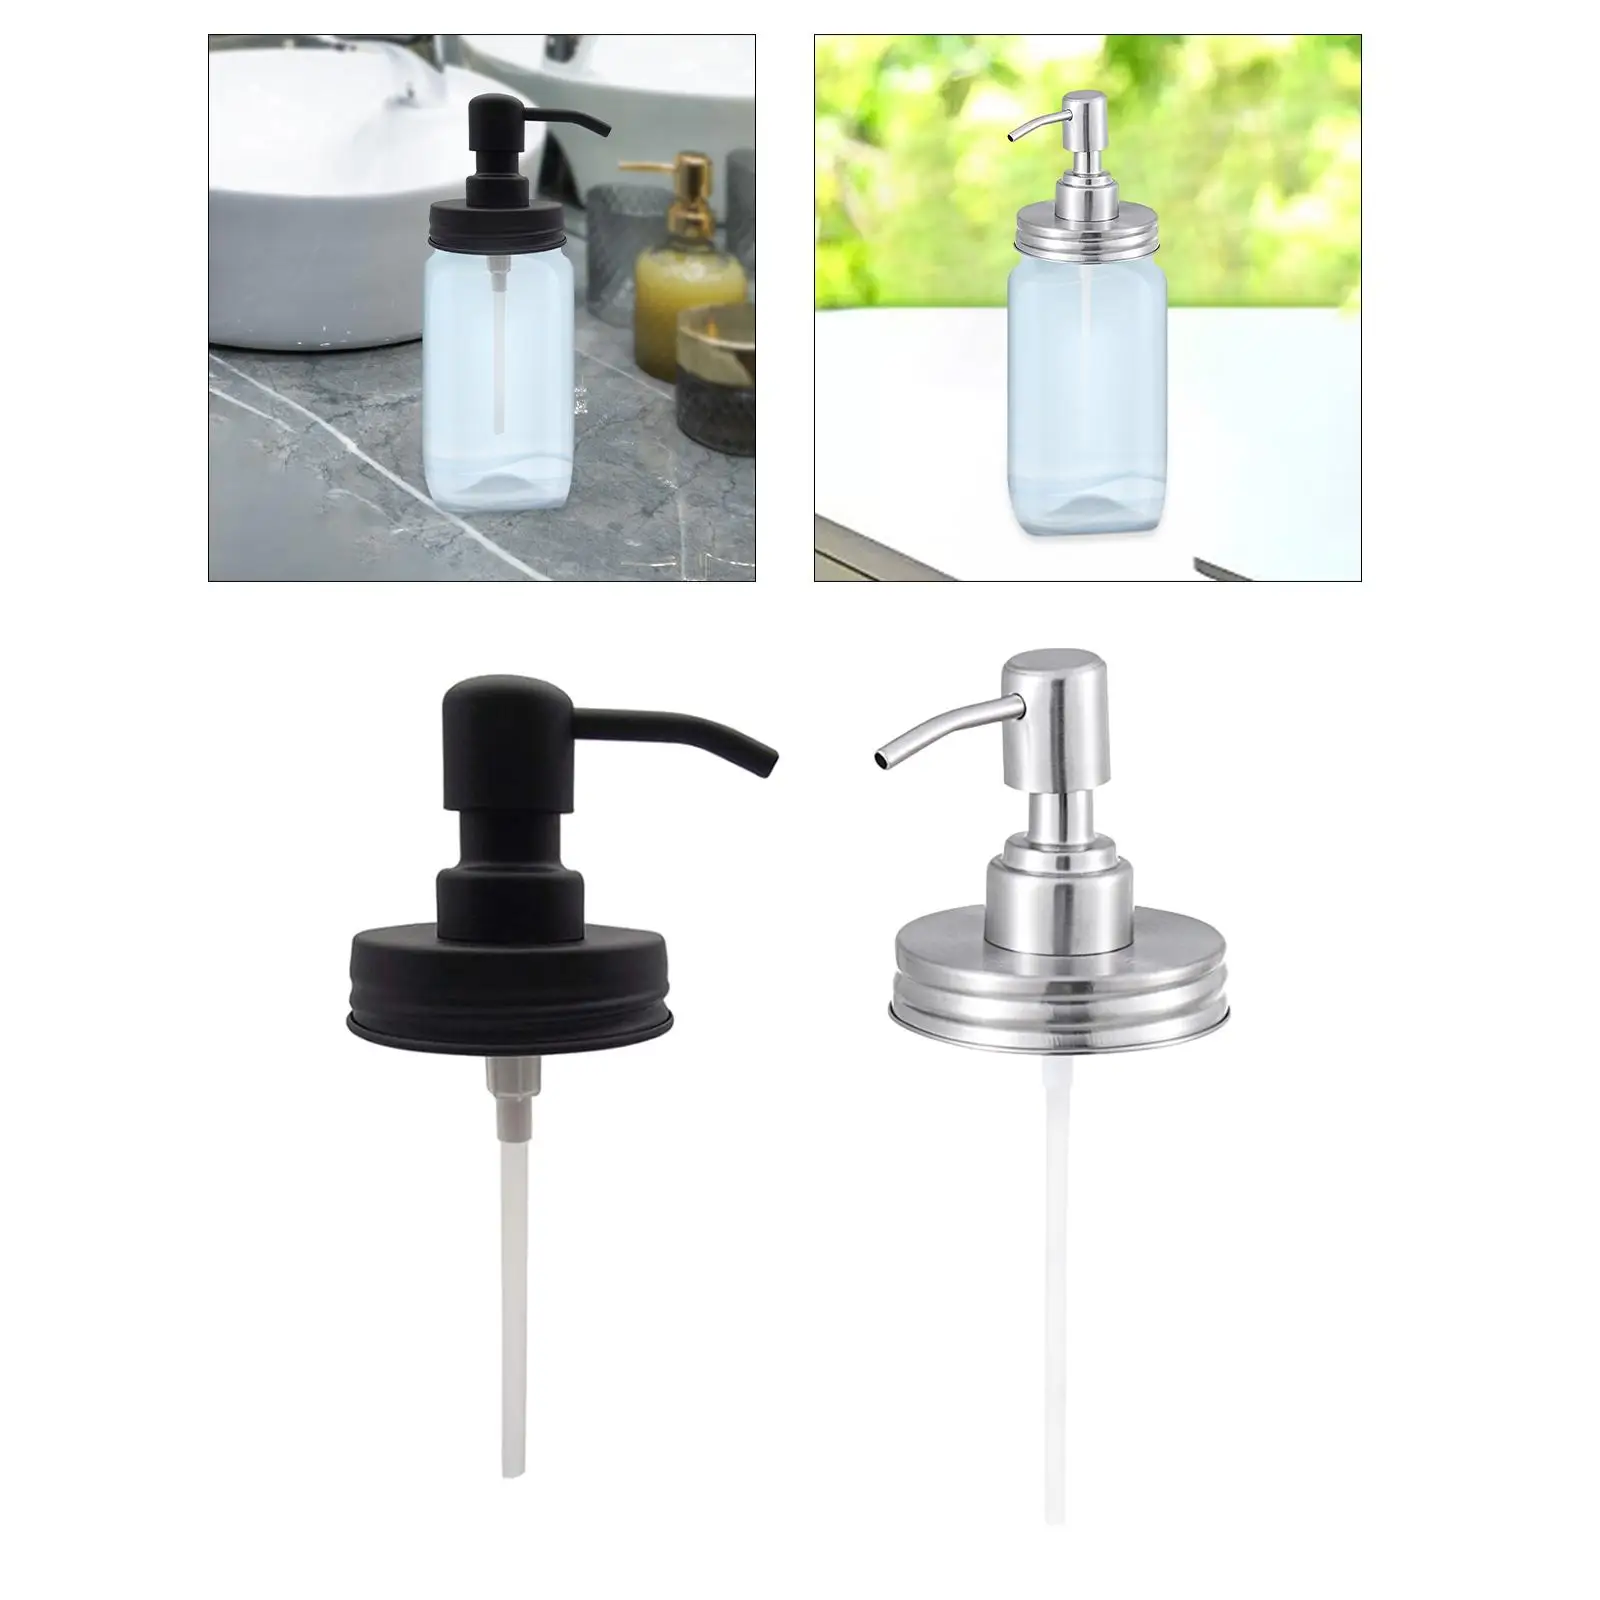 Soap Dispenser Pump ,Replacement, Soap Pump Nozzle Head, for Neck Size Liquid Dispenser Kitchen Sink Accessories Parts